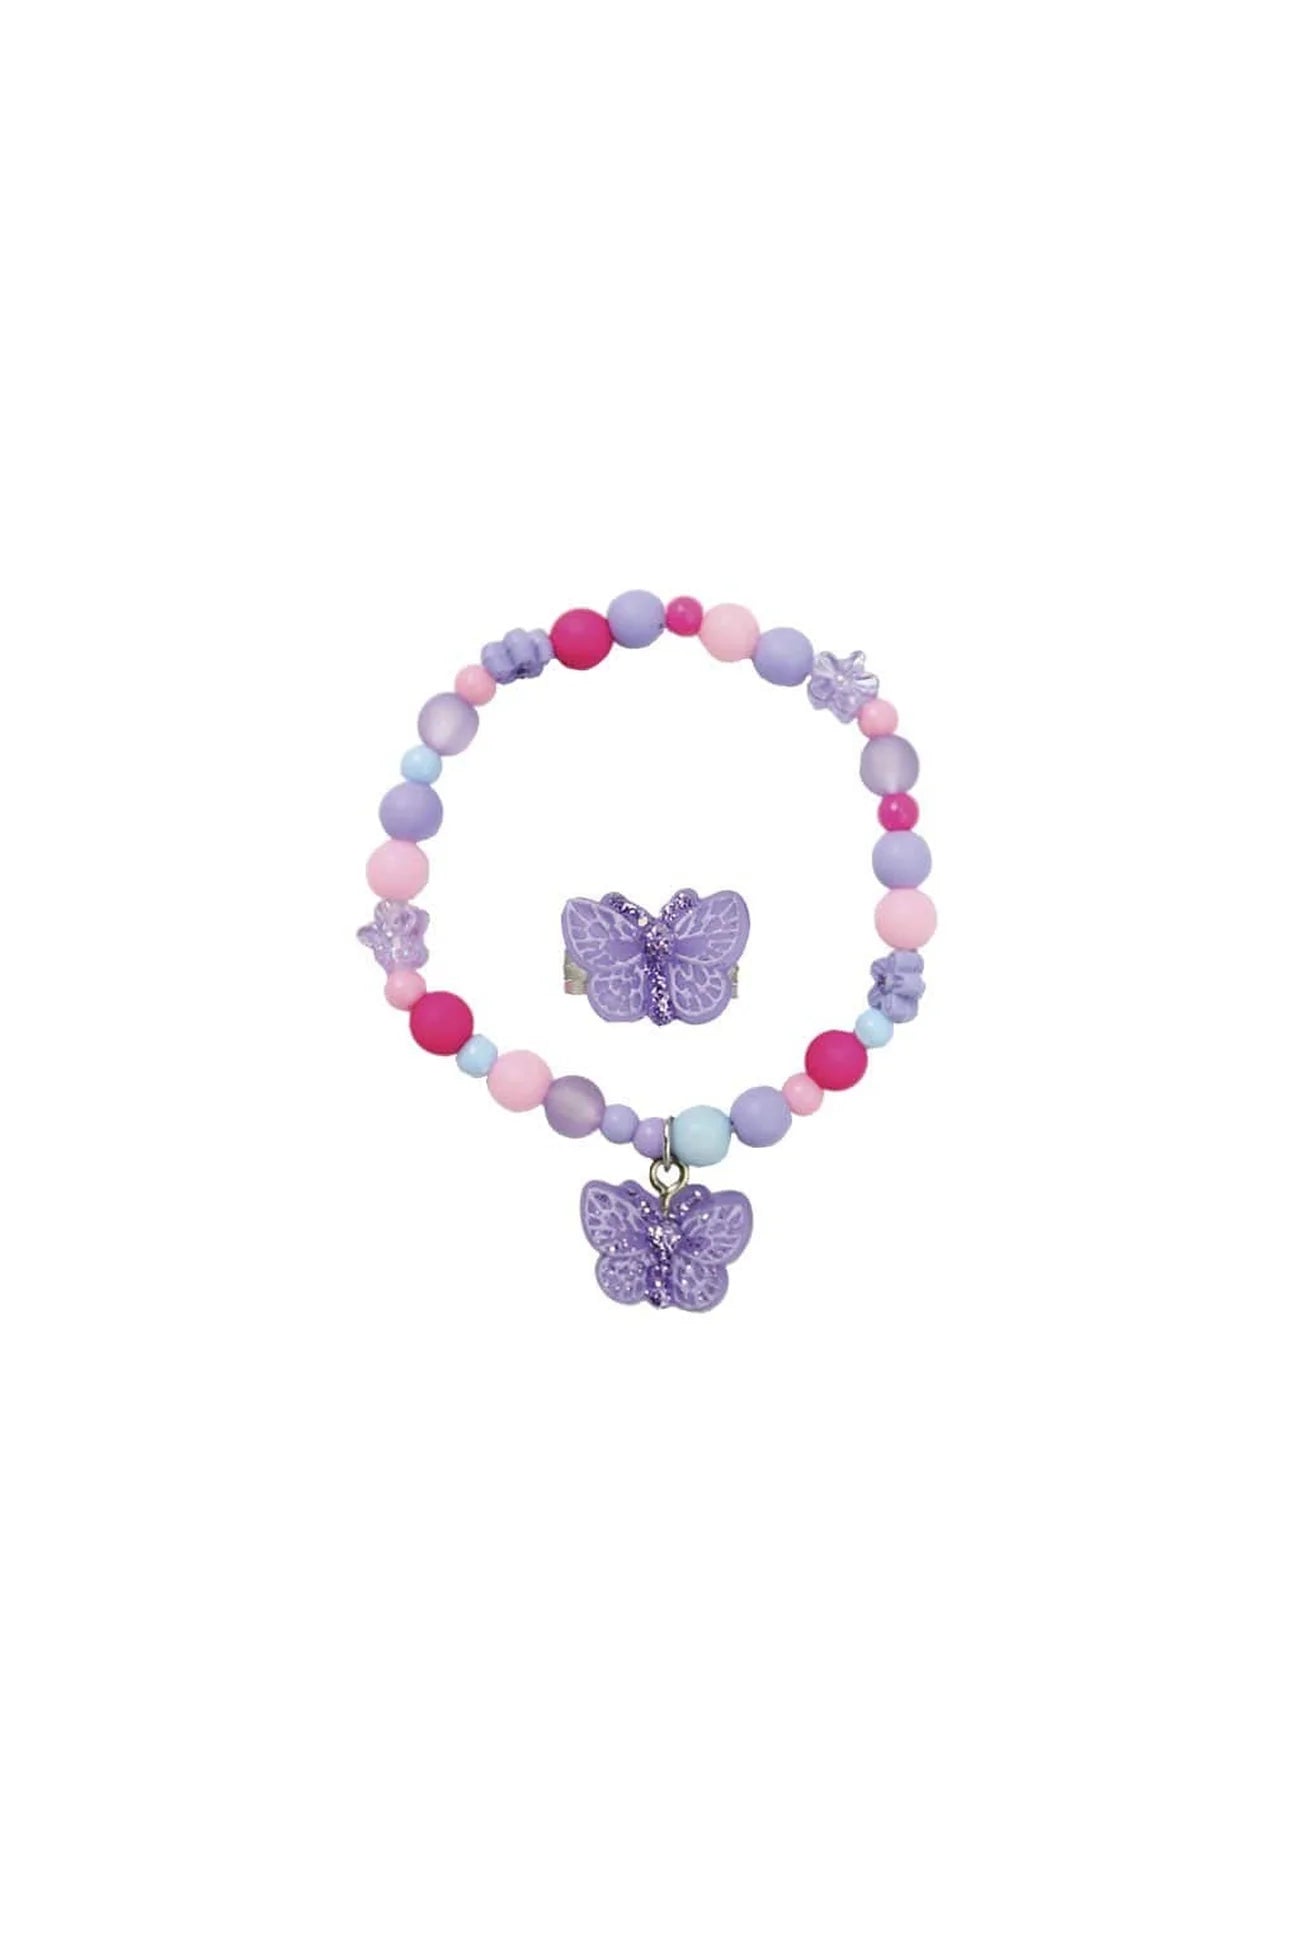 Sparkle Butterfly Bracelet + Ring Set